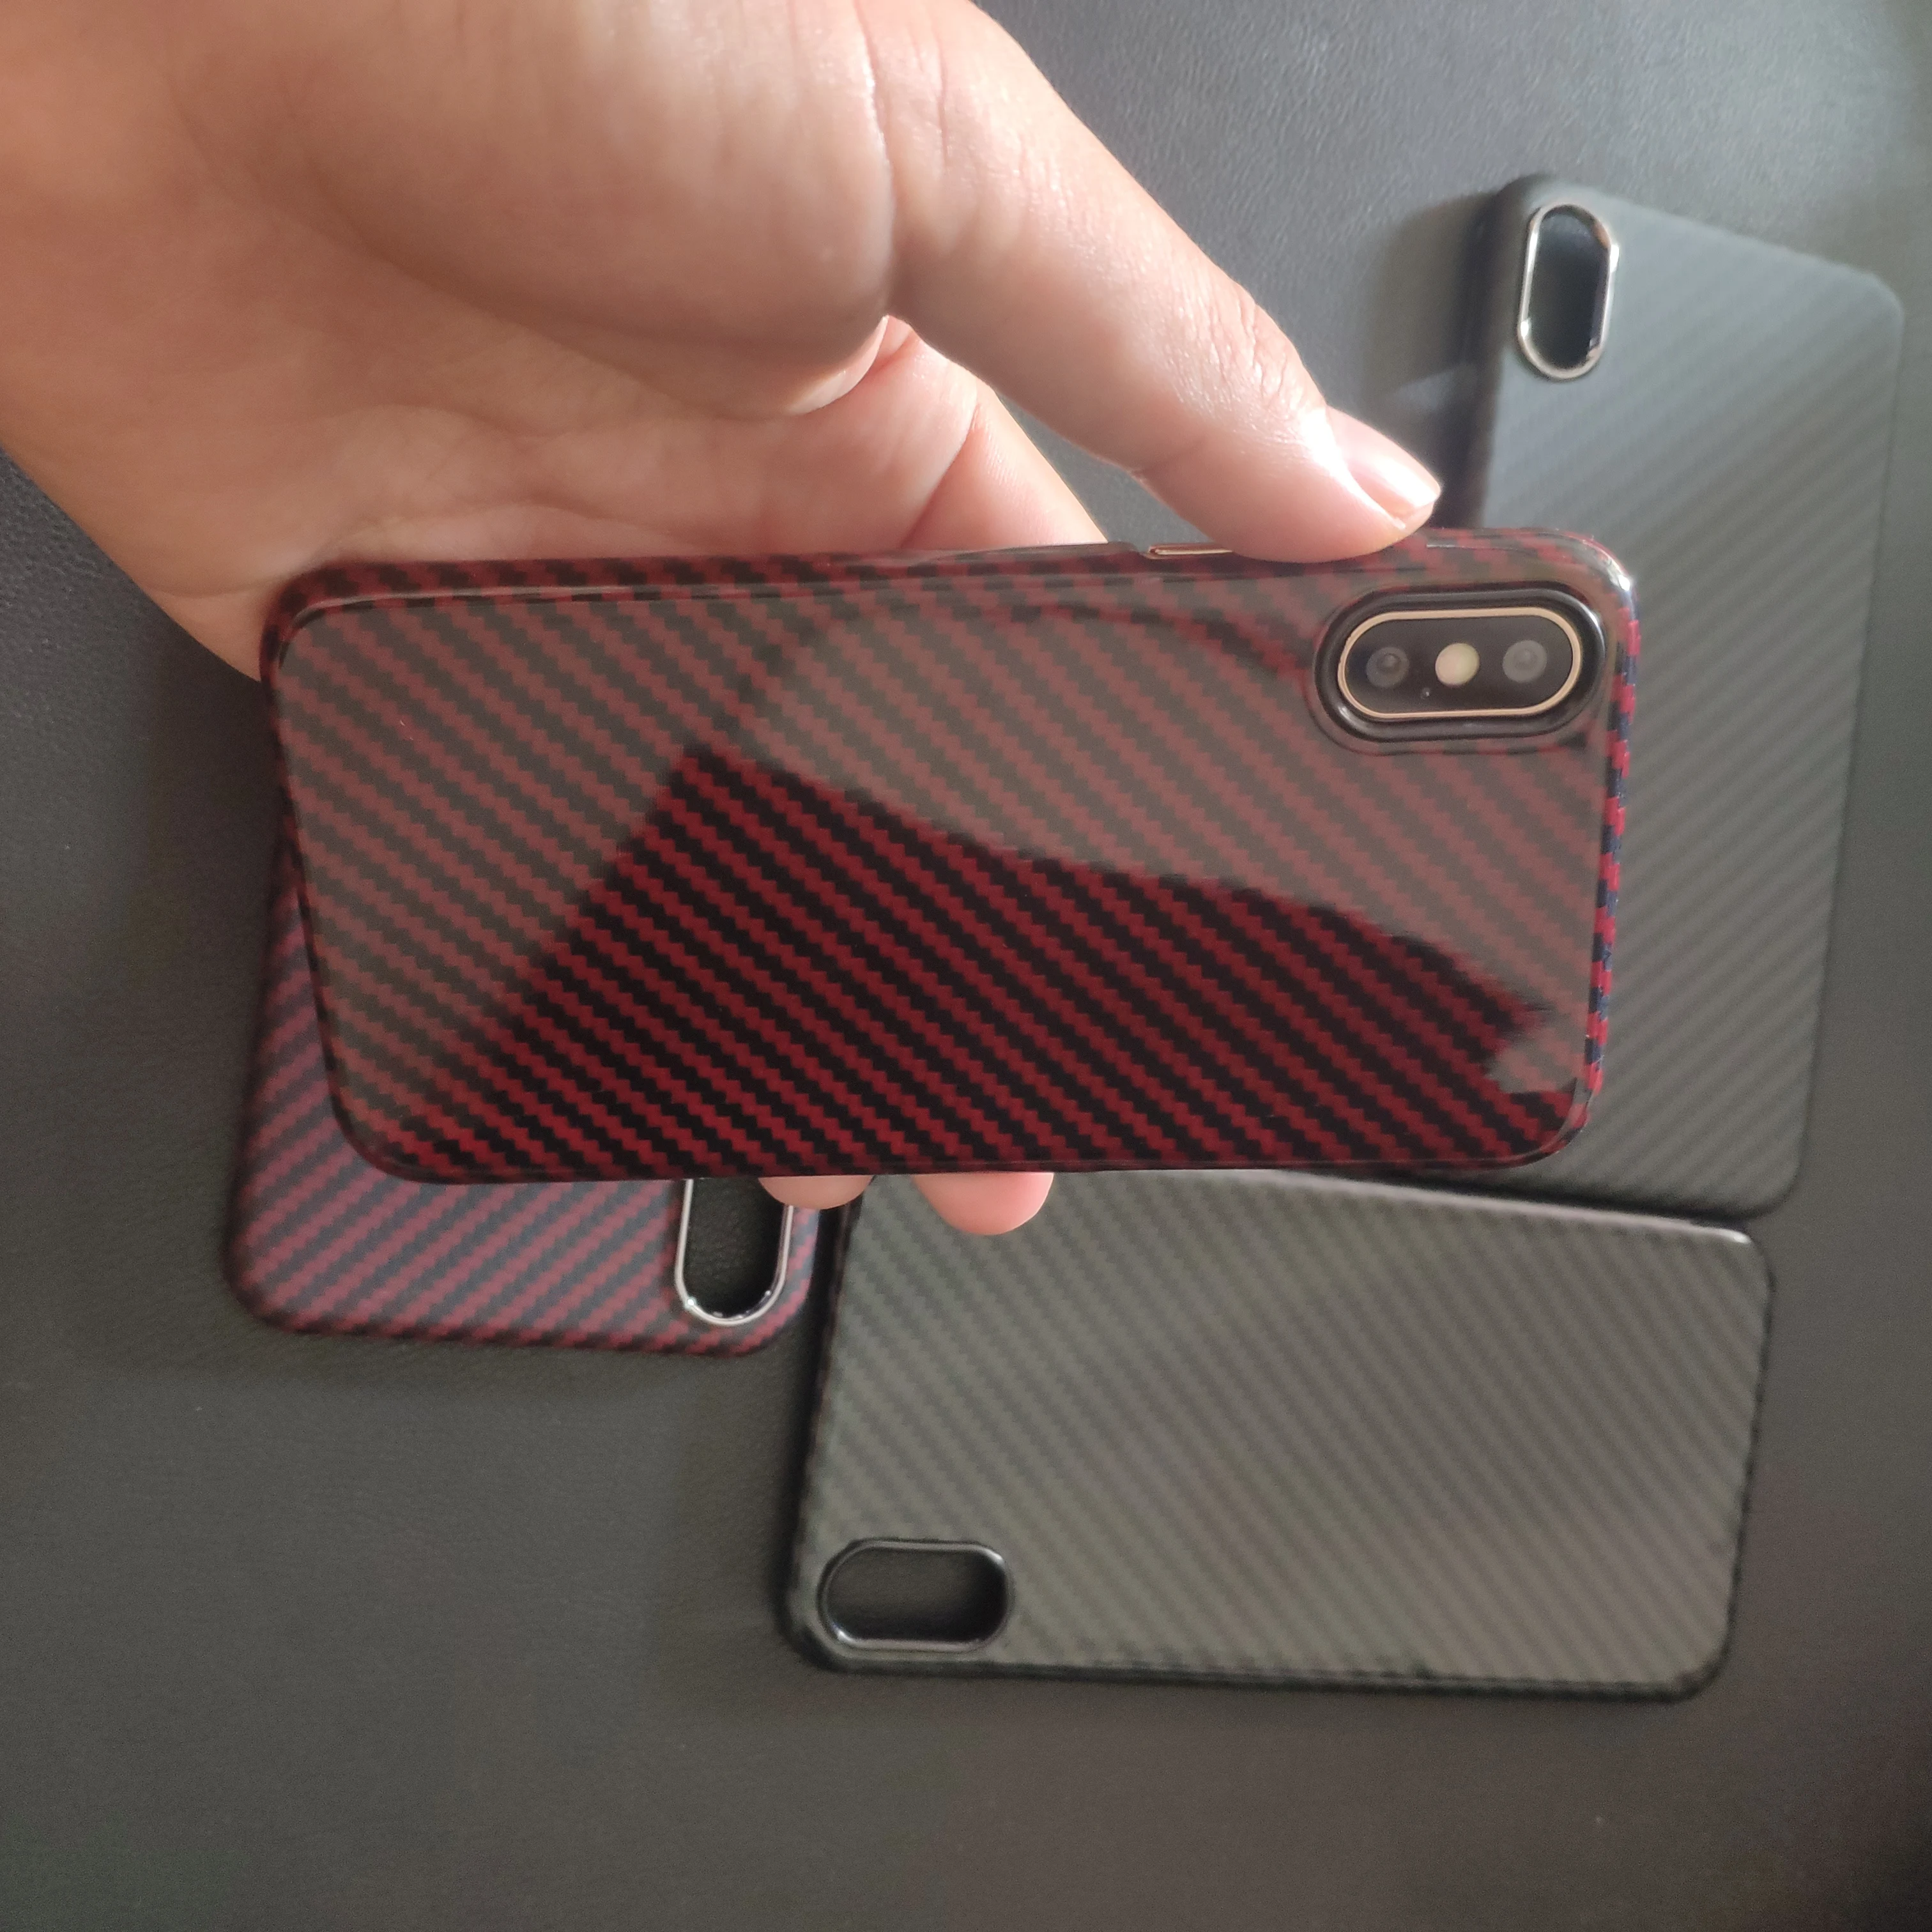 Чехол из углеродного волокна для iPhone 11 Pro Max X XS Max, Ультратонкий чехол, тонкая задняя крышка, глянцевый красный матовый черный для iPhone XS Max 11 Pro